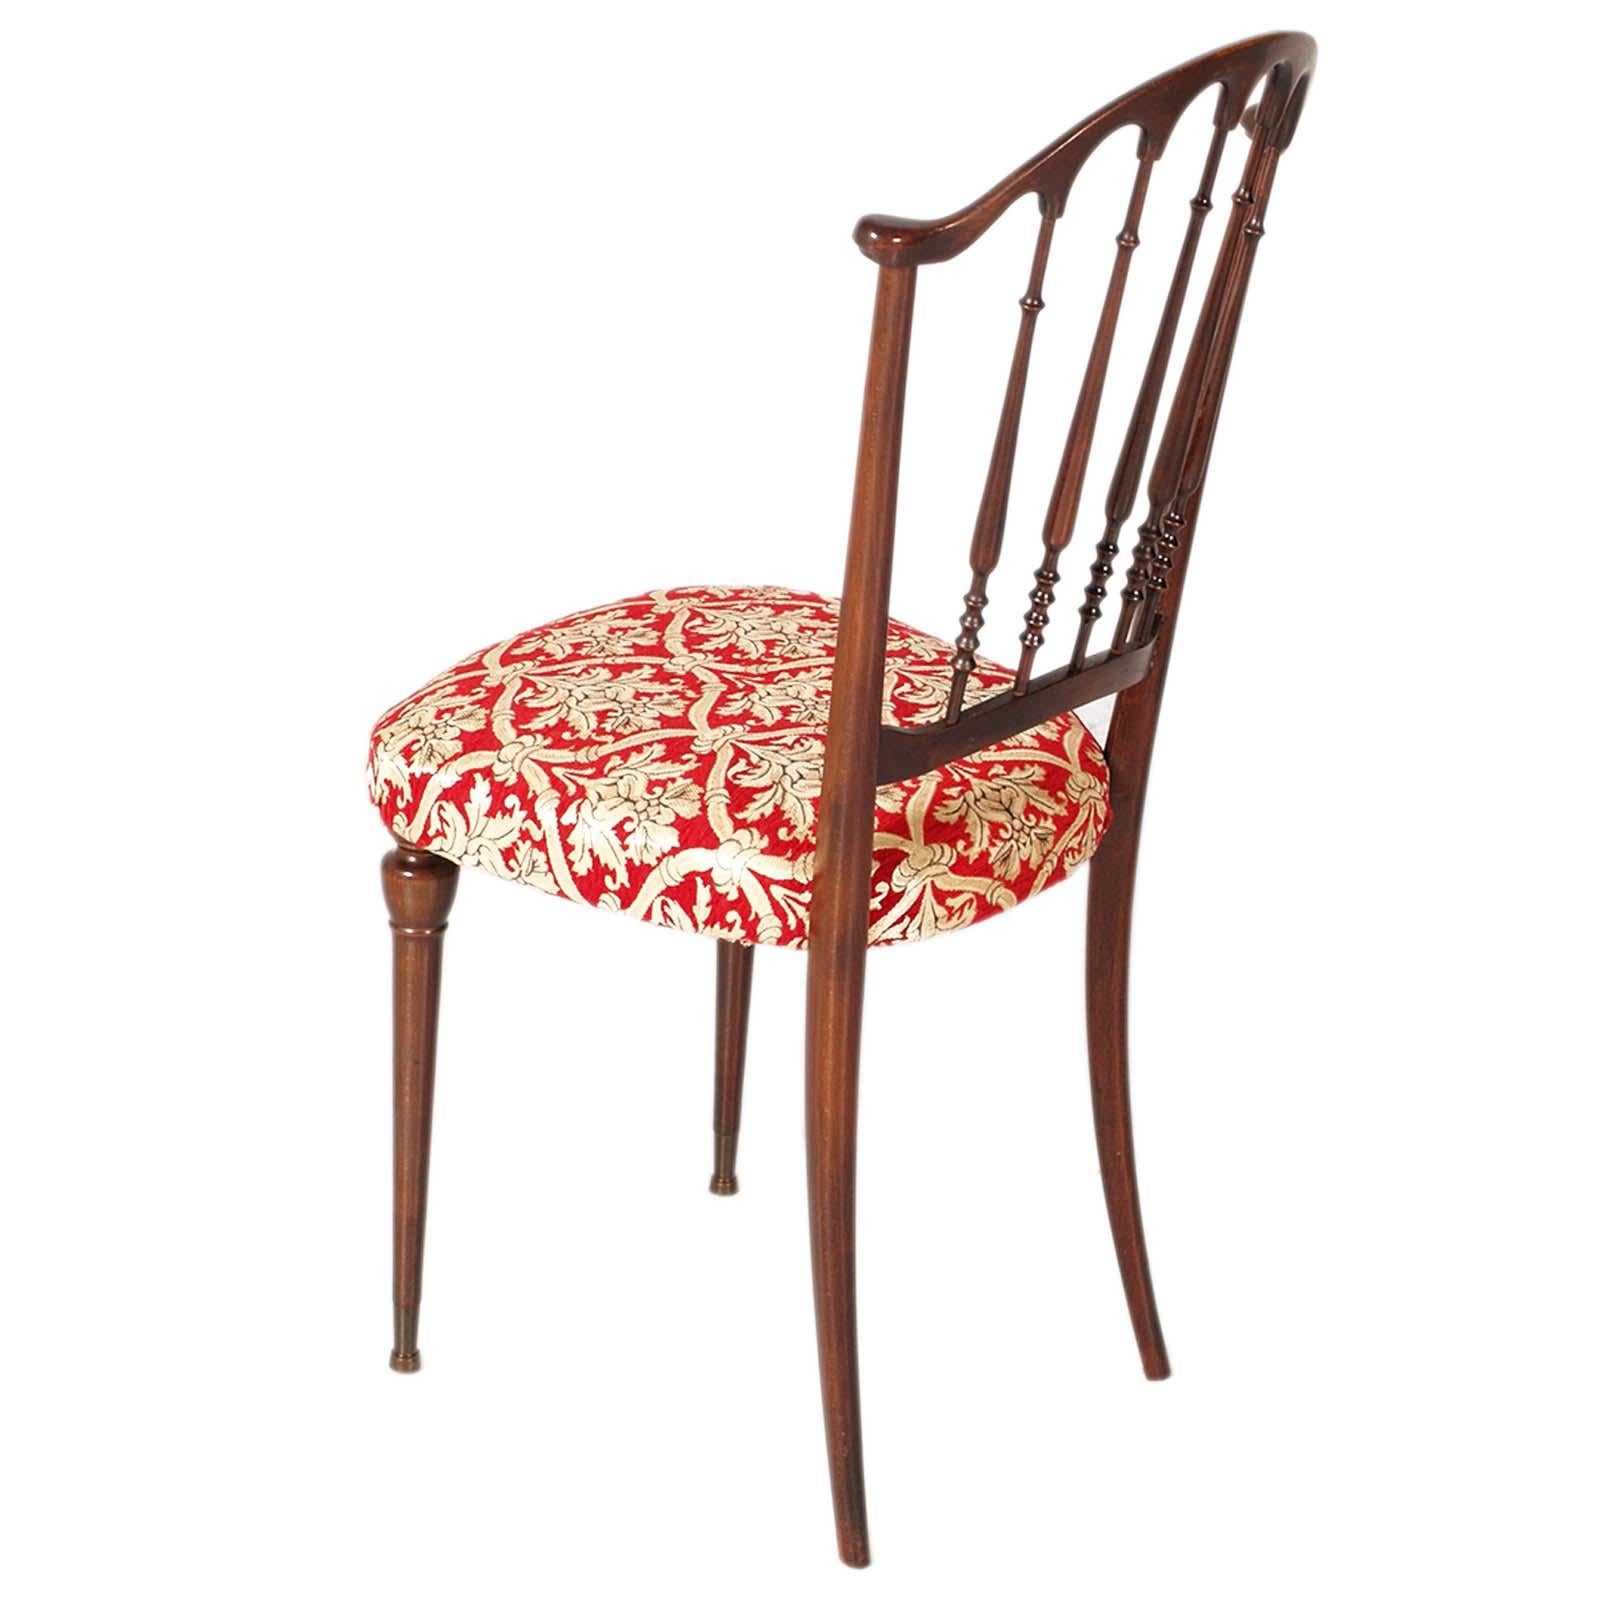 Eleganter Chiavari-Sessel aus der Mitte des Jahrhunderts, von Paolo Buffa, Belle Epoque, neu gepolstert mit Fortuny-Damaststoff, Venedig, lackierte Ausführung.
Um eine Ecke Ihres Hauses romantisch zu gestalten.